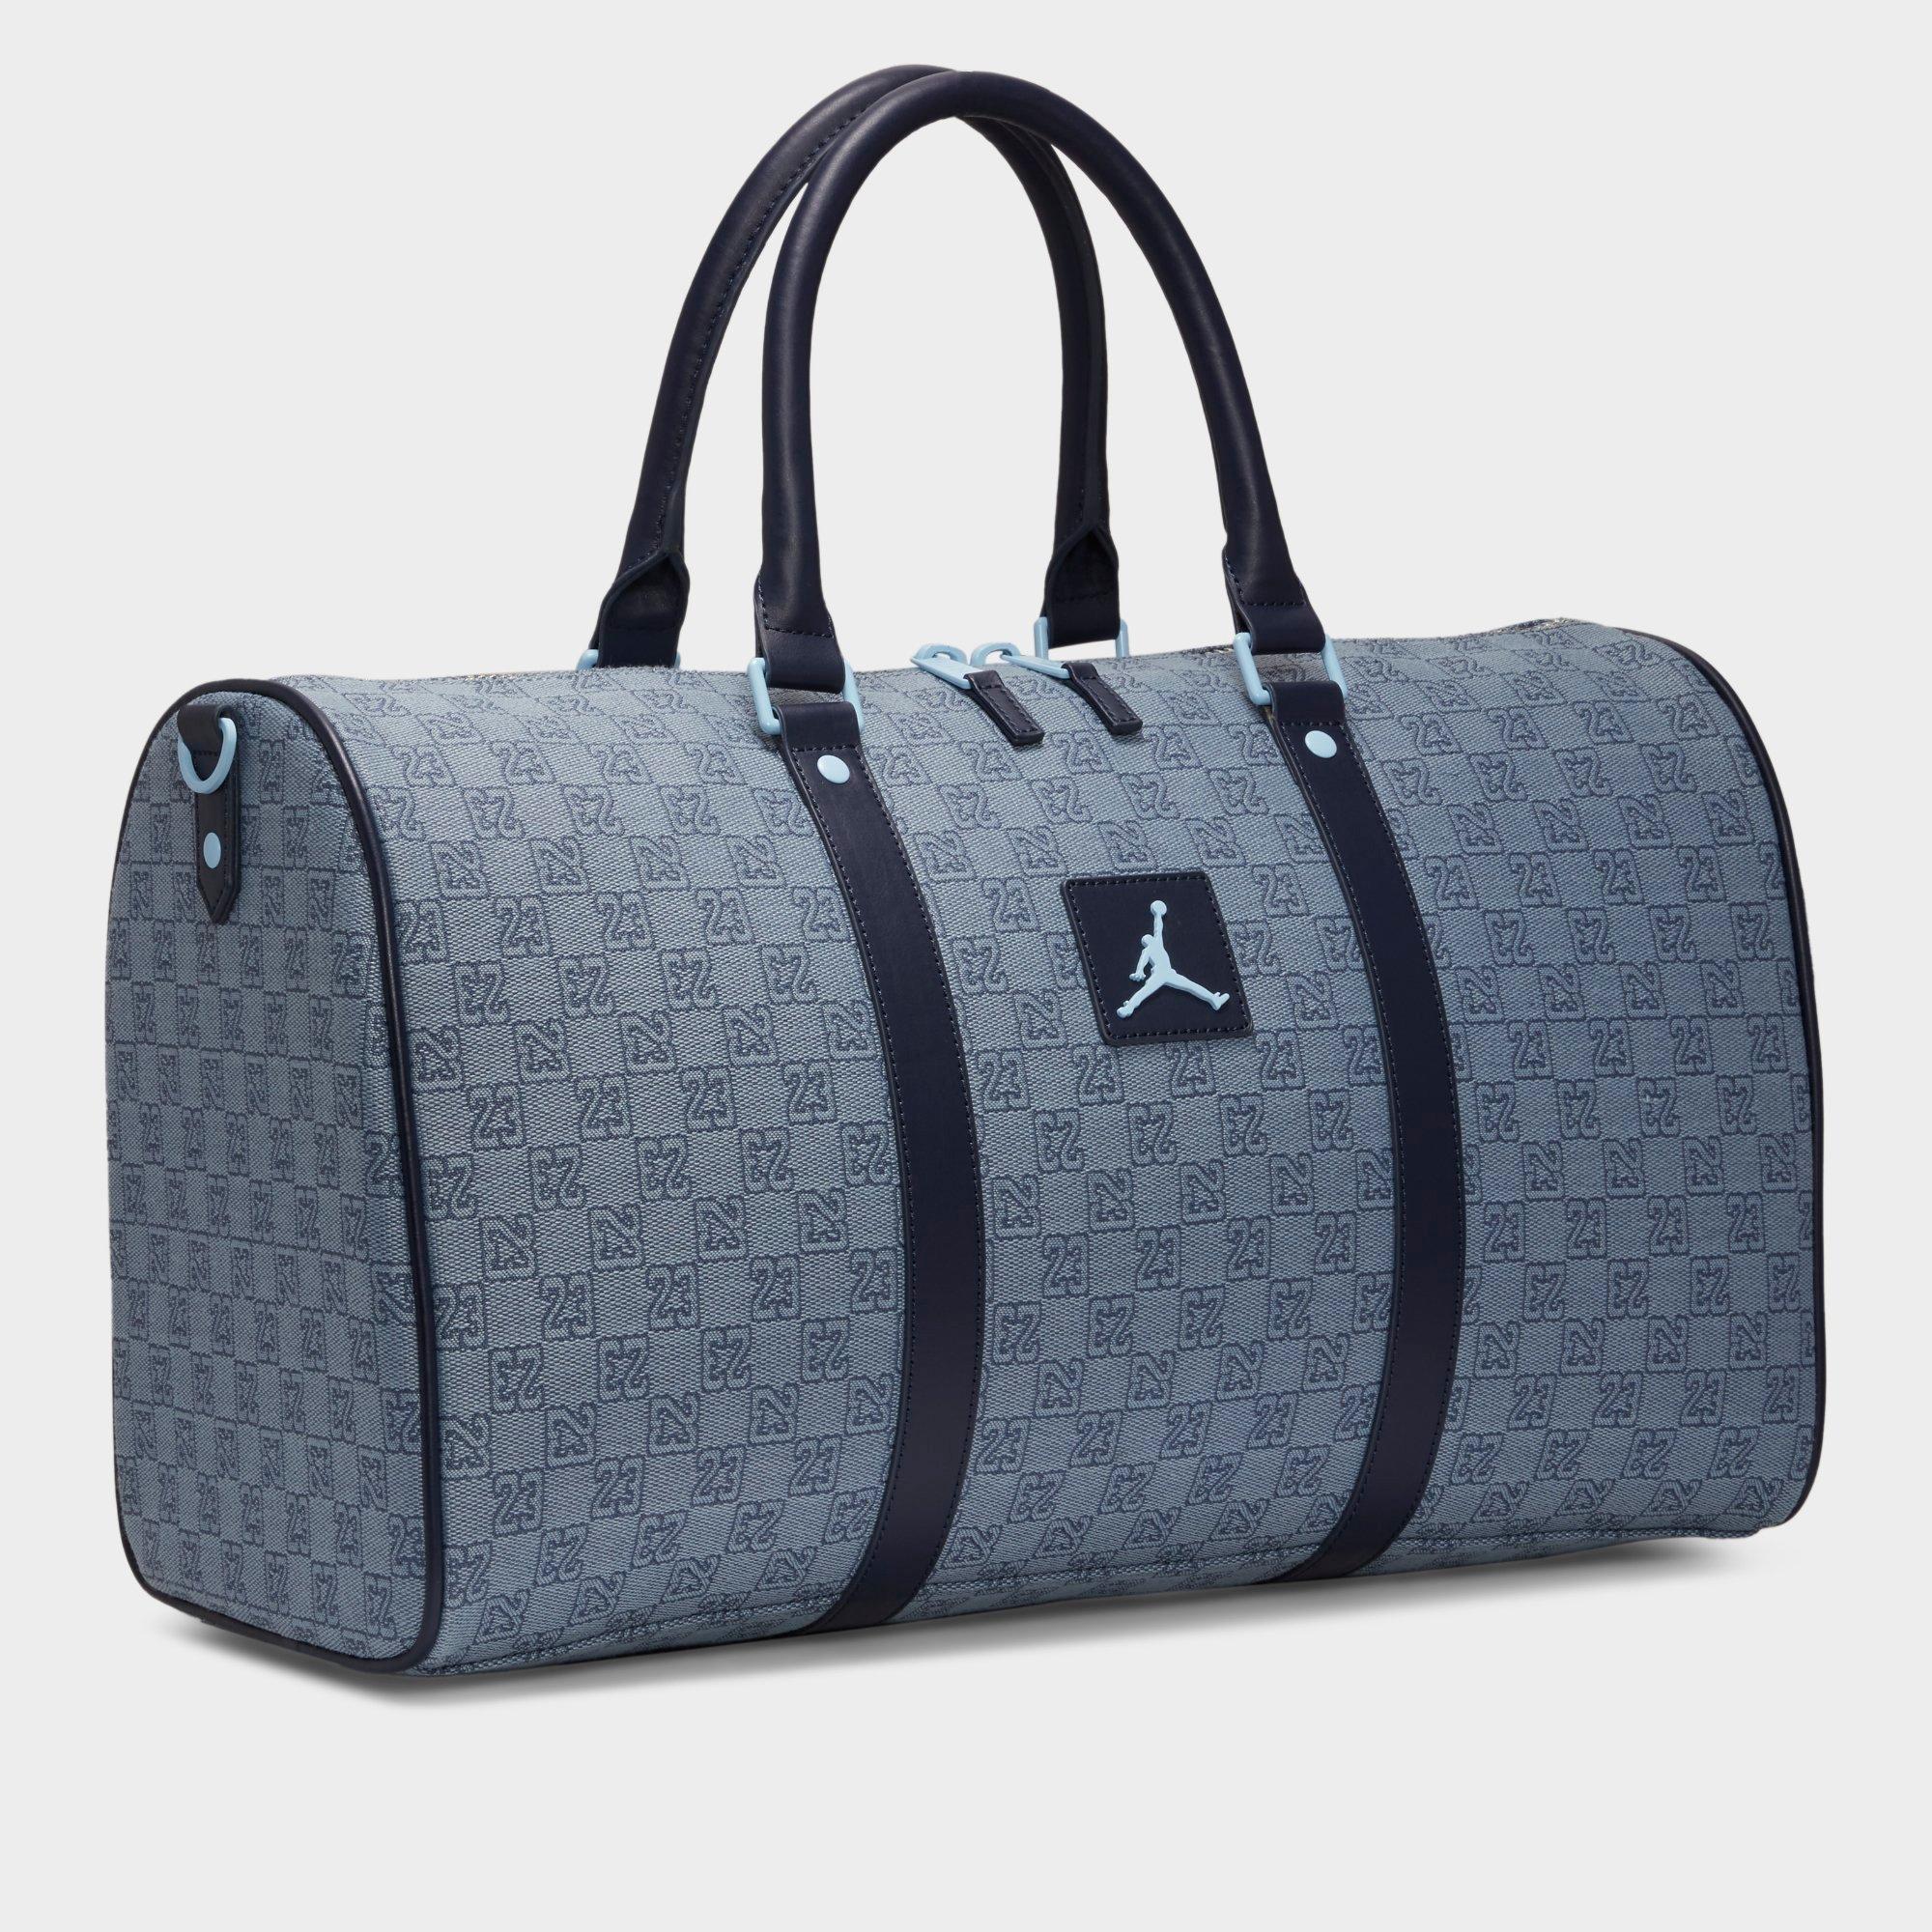 新品 Jordan Brand Monogram Duffle Bag Greyボストンバッグ - ボストンバッグ